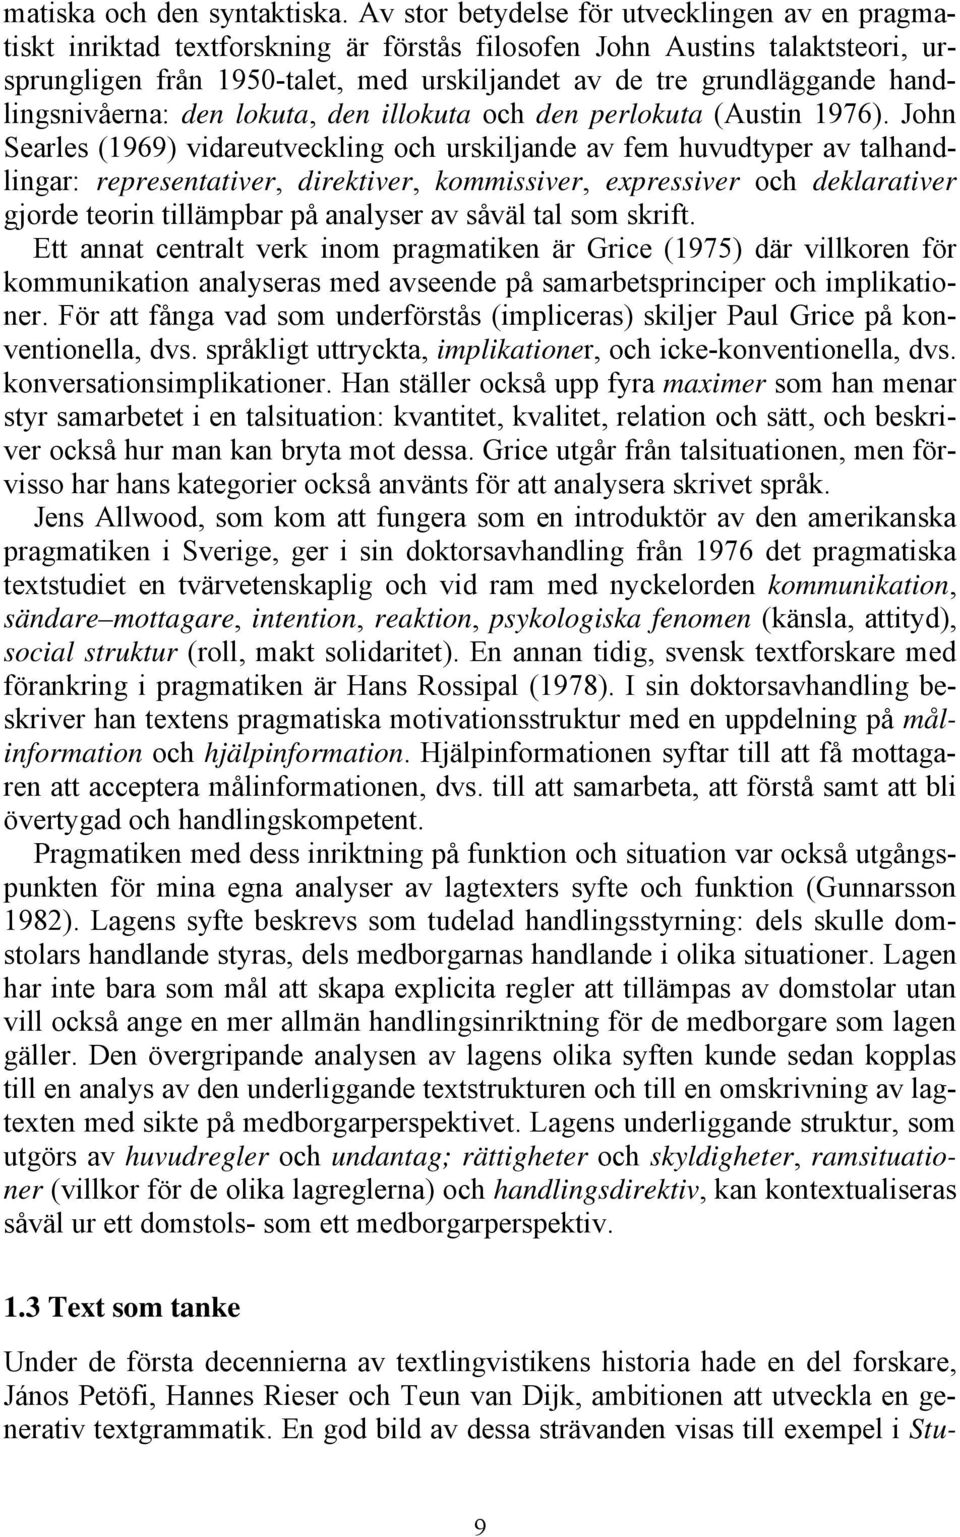 handlingsnivåerna: den lokuta, den illokuta och den perlokuta (Austin 1976).